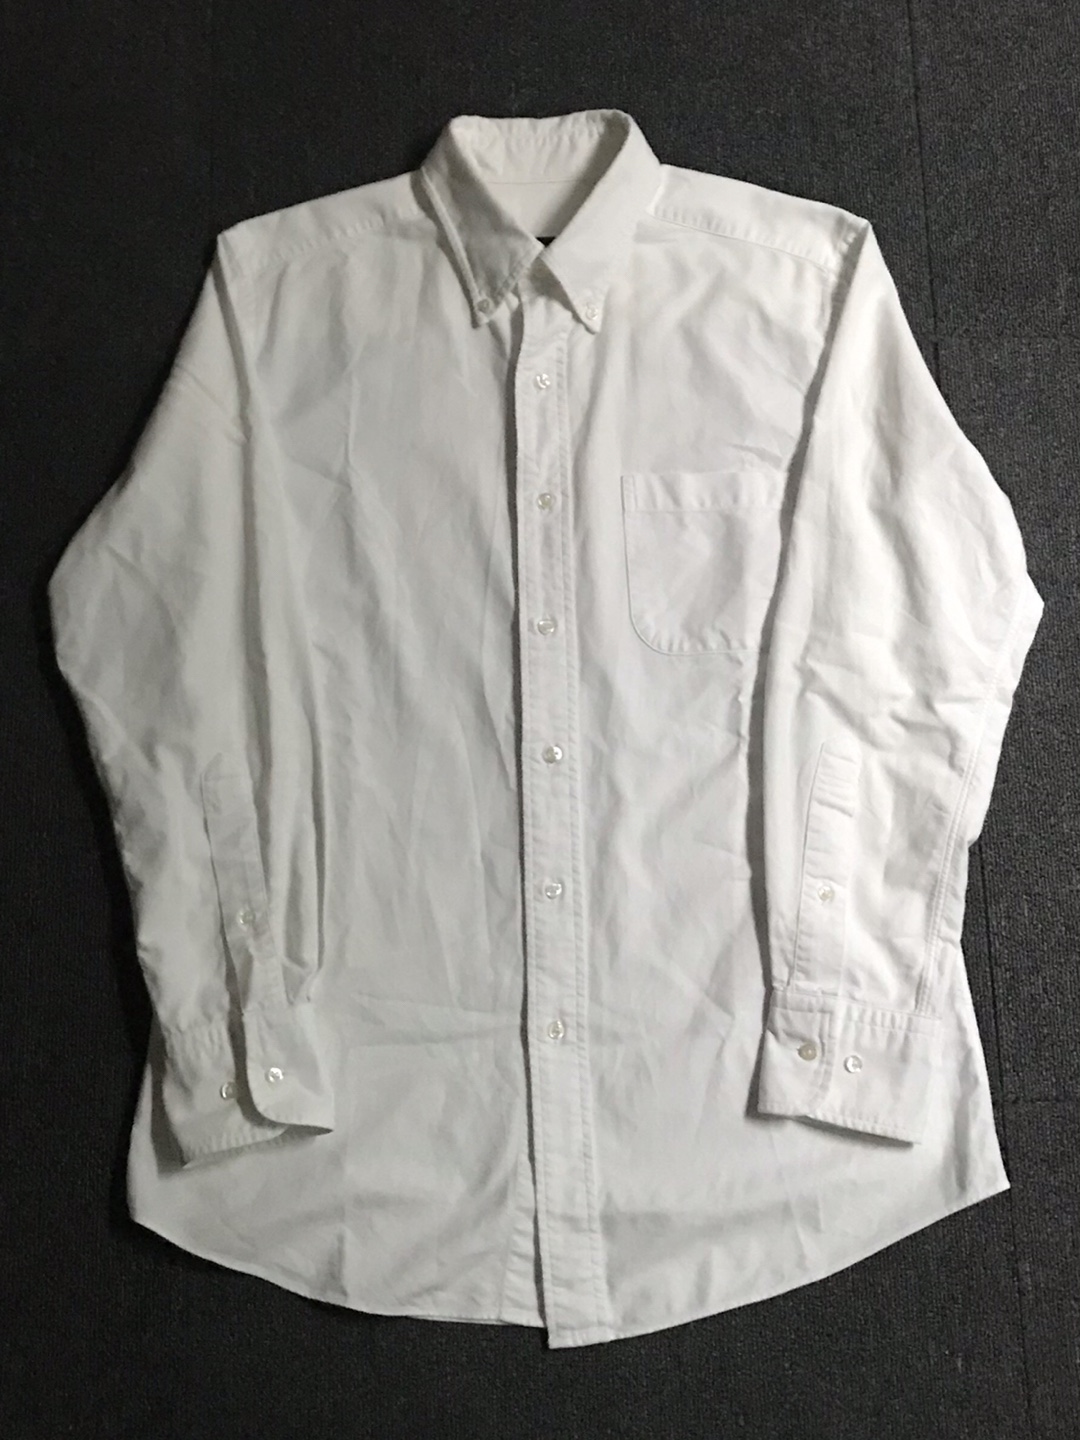 southwick clothes ocbd shirt USA made (M size, ~103 추천)